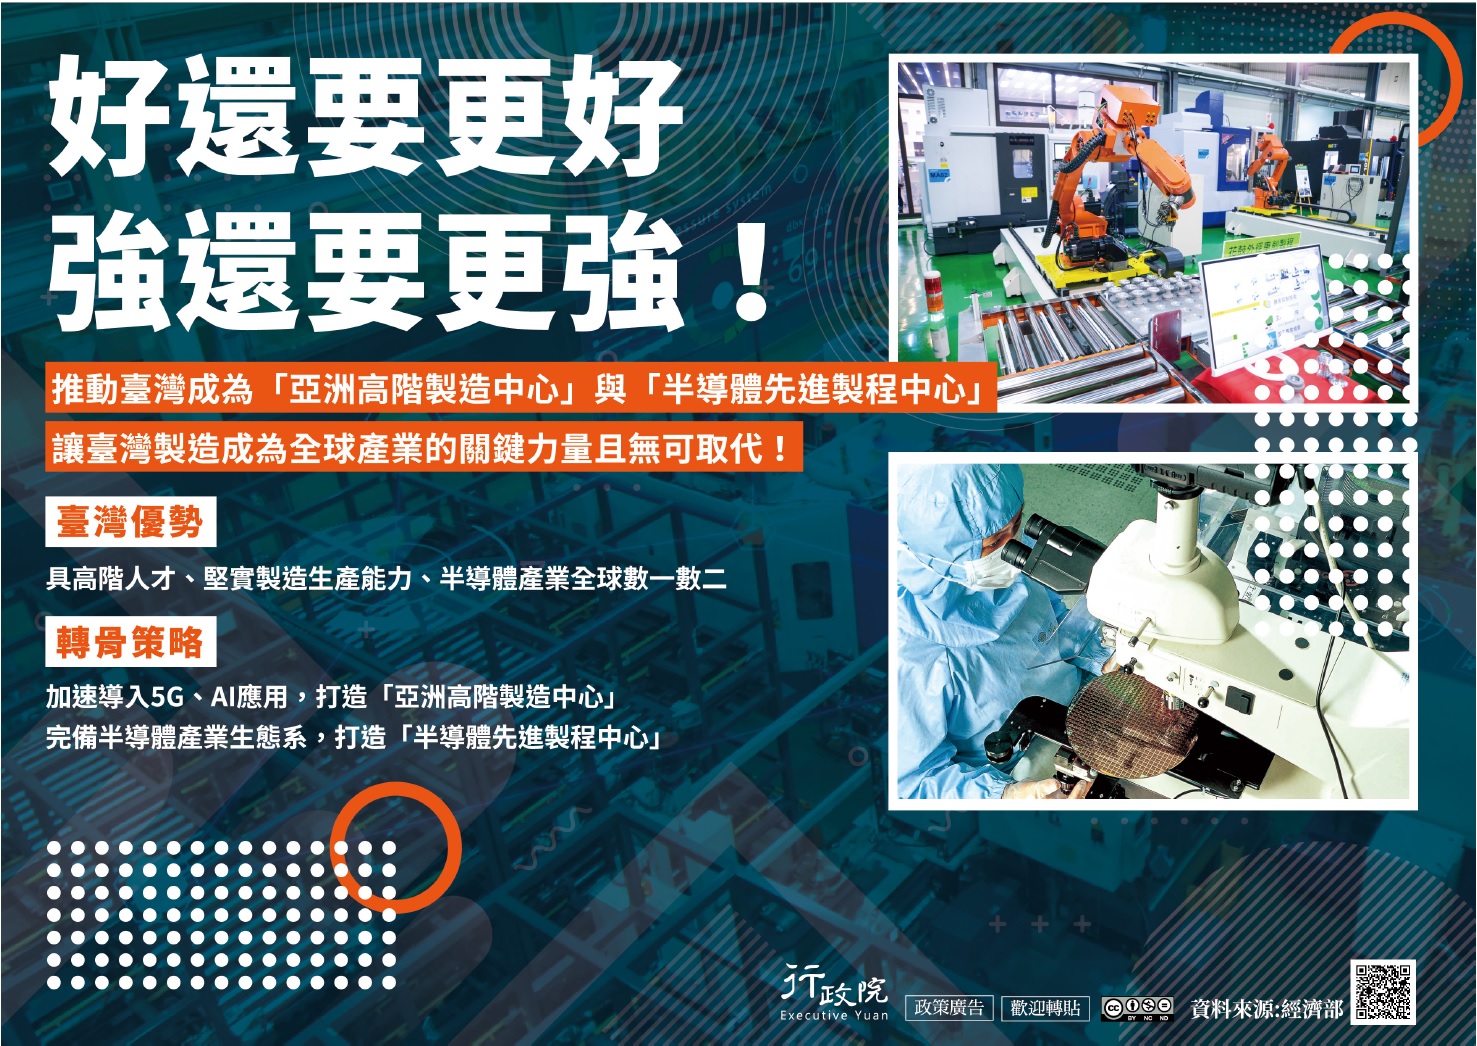 「推動台灣成為『亞 洲高階製造中心』與『半導體先進製程中心』」